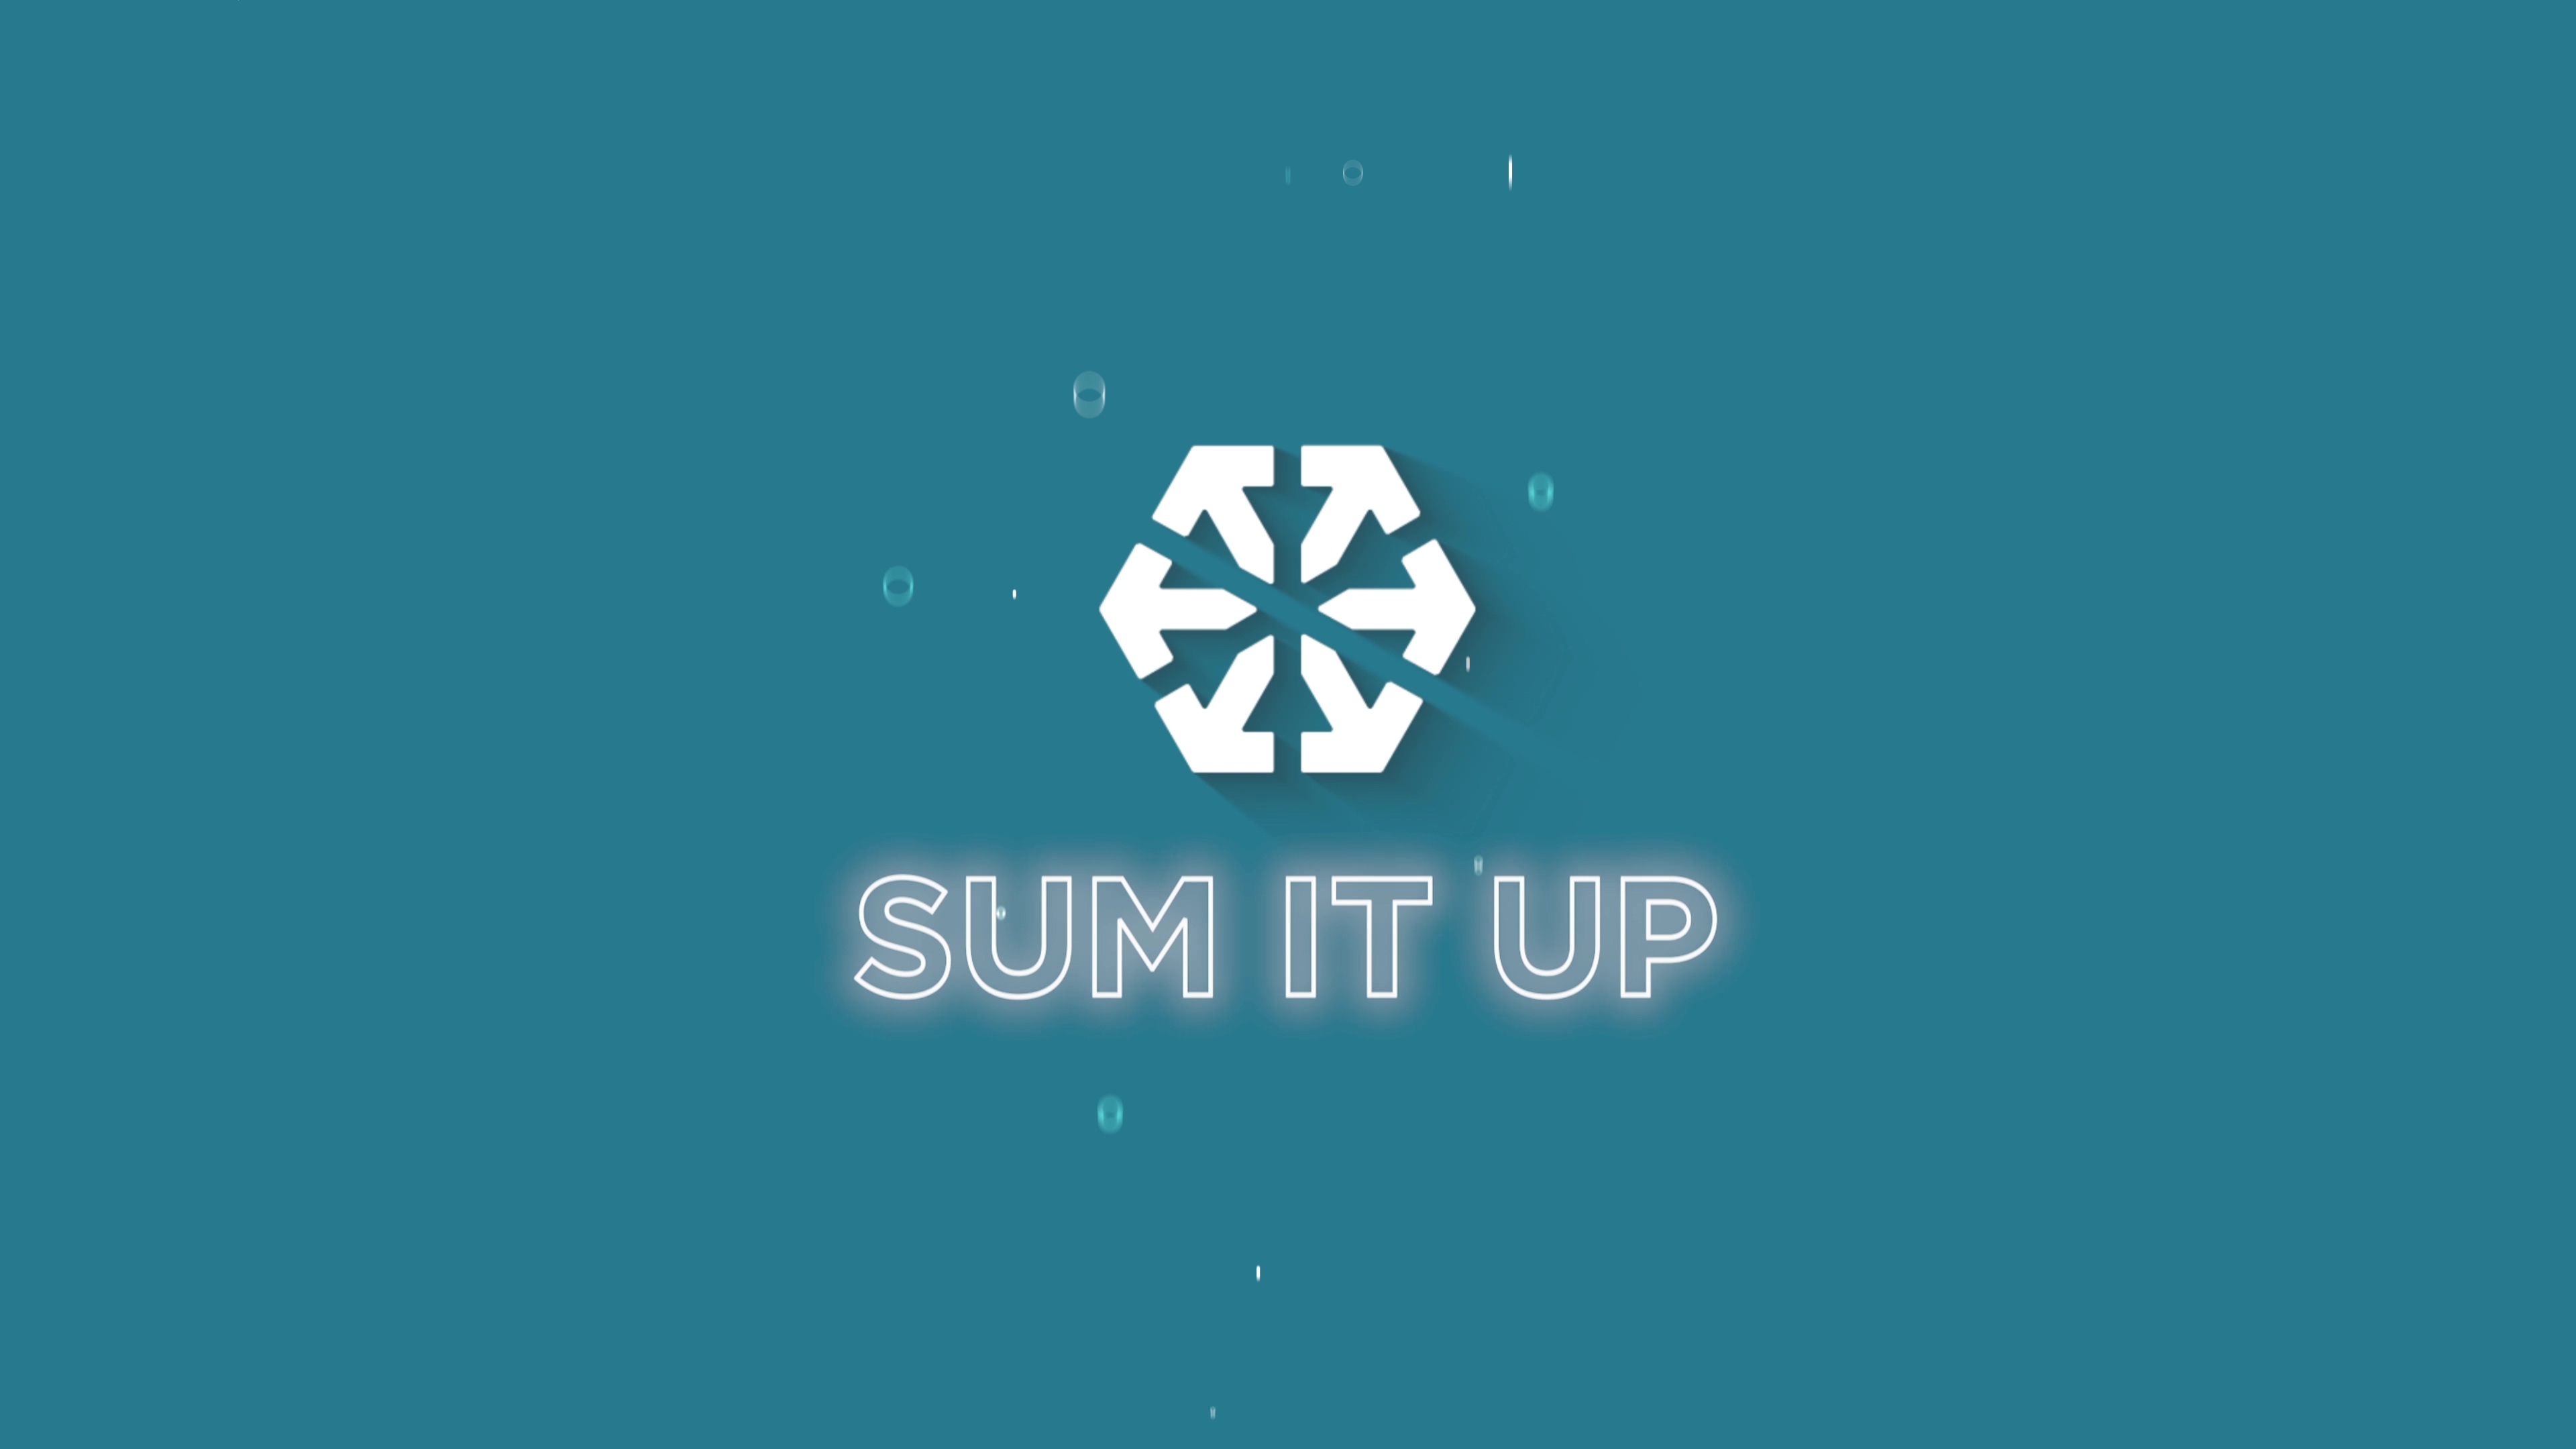 Sum It Up! Episode 1